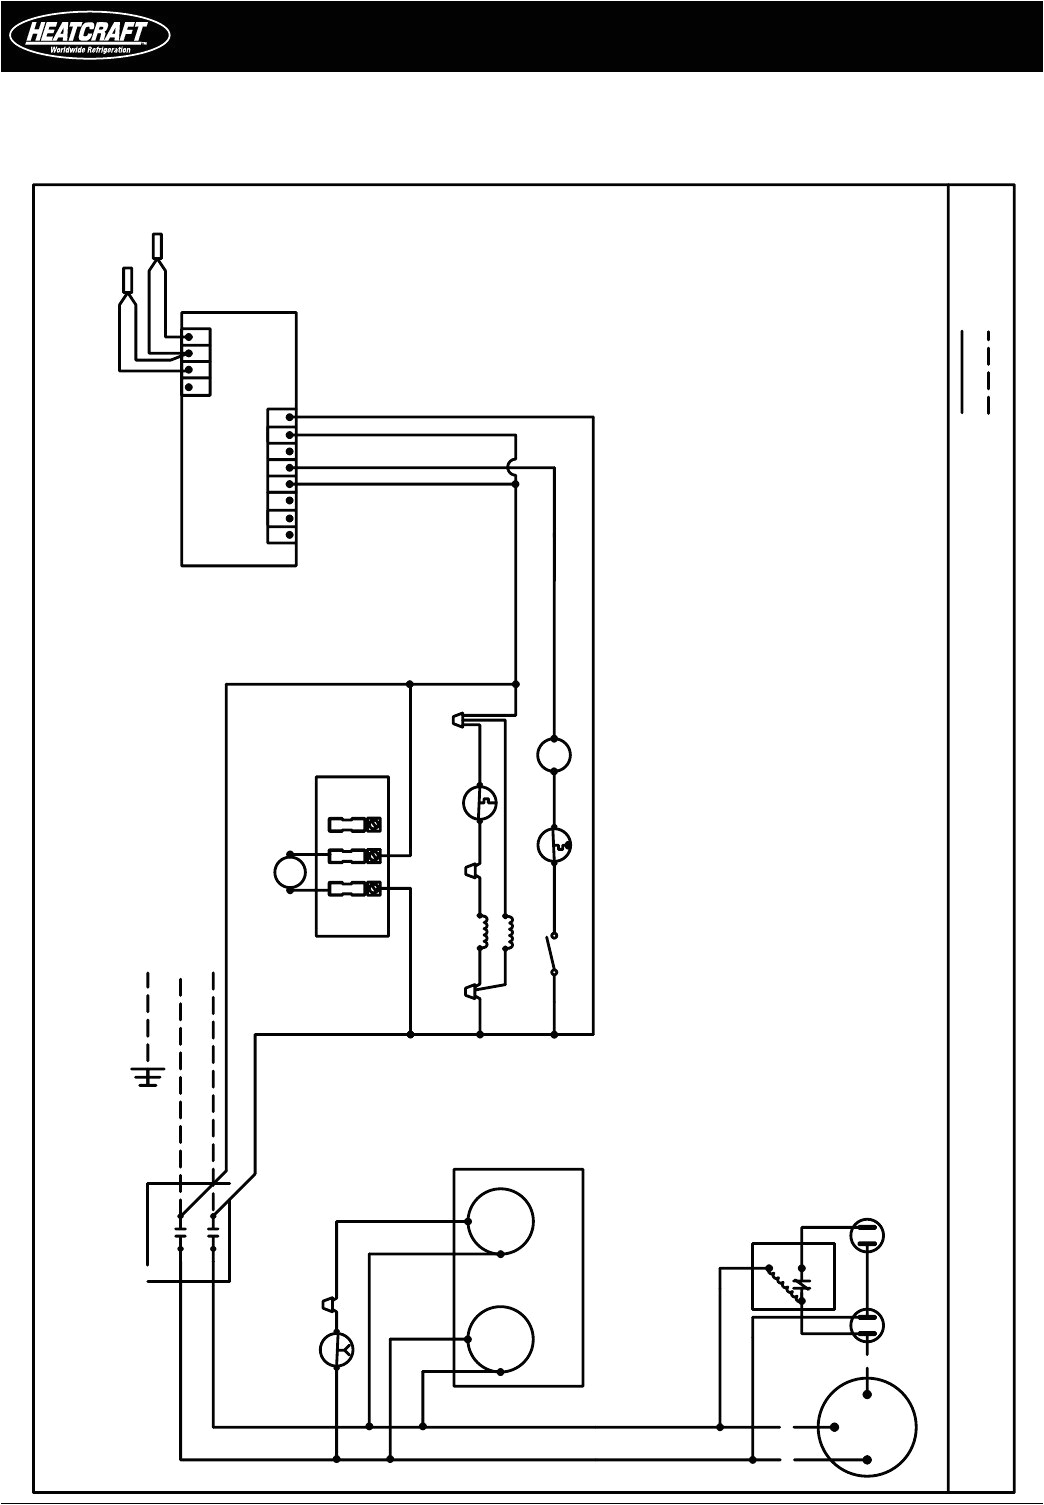 heatcraft walk in cooler wiring diagram download